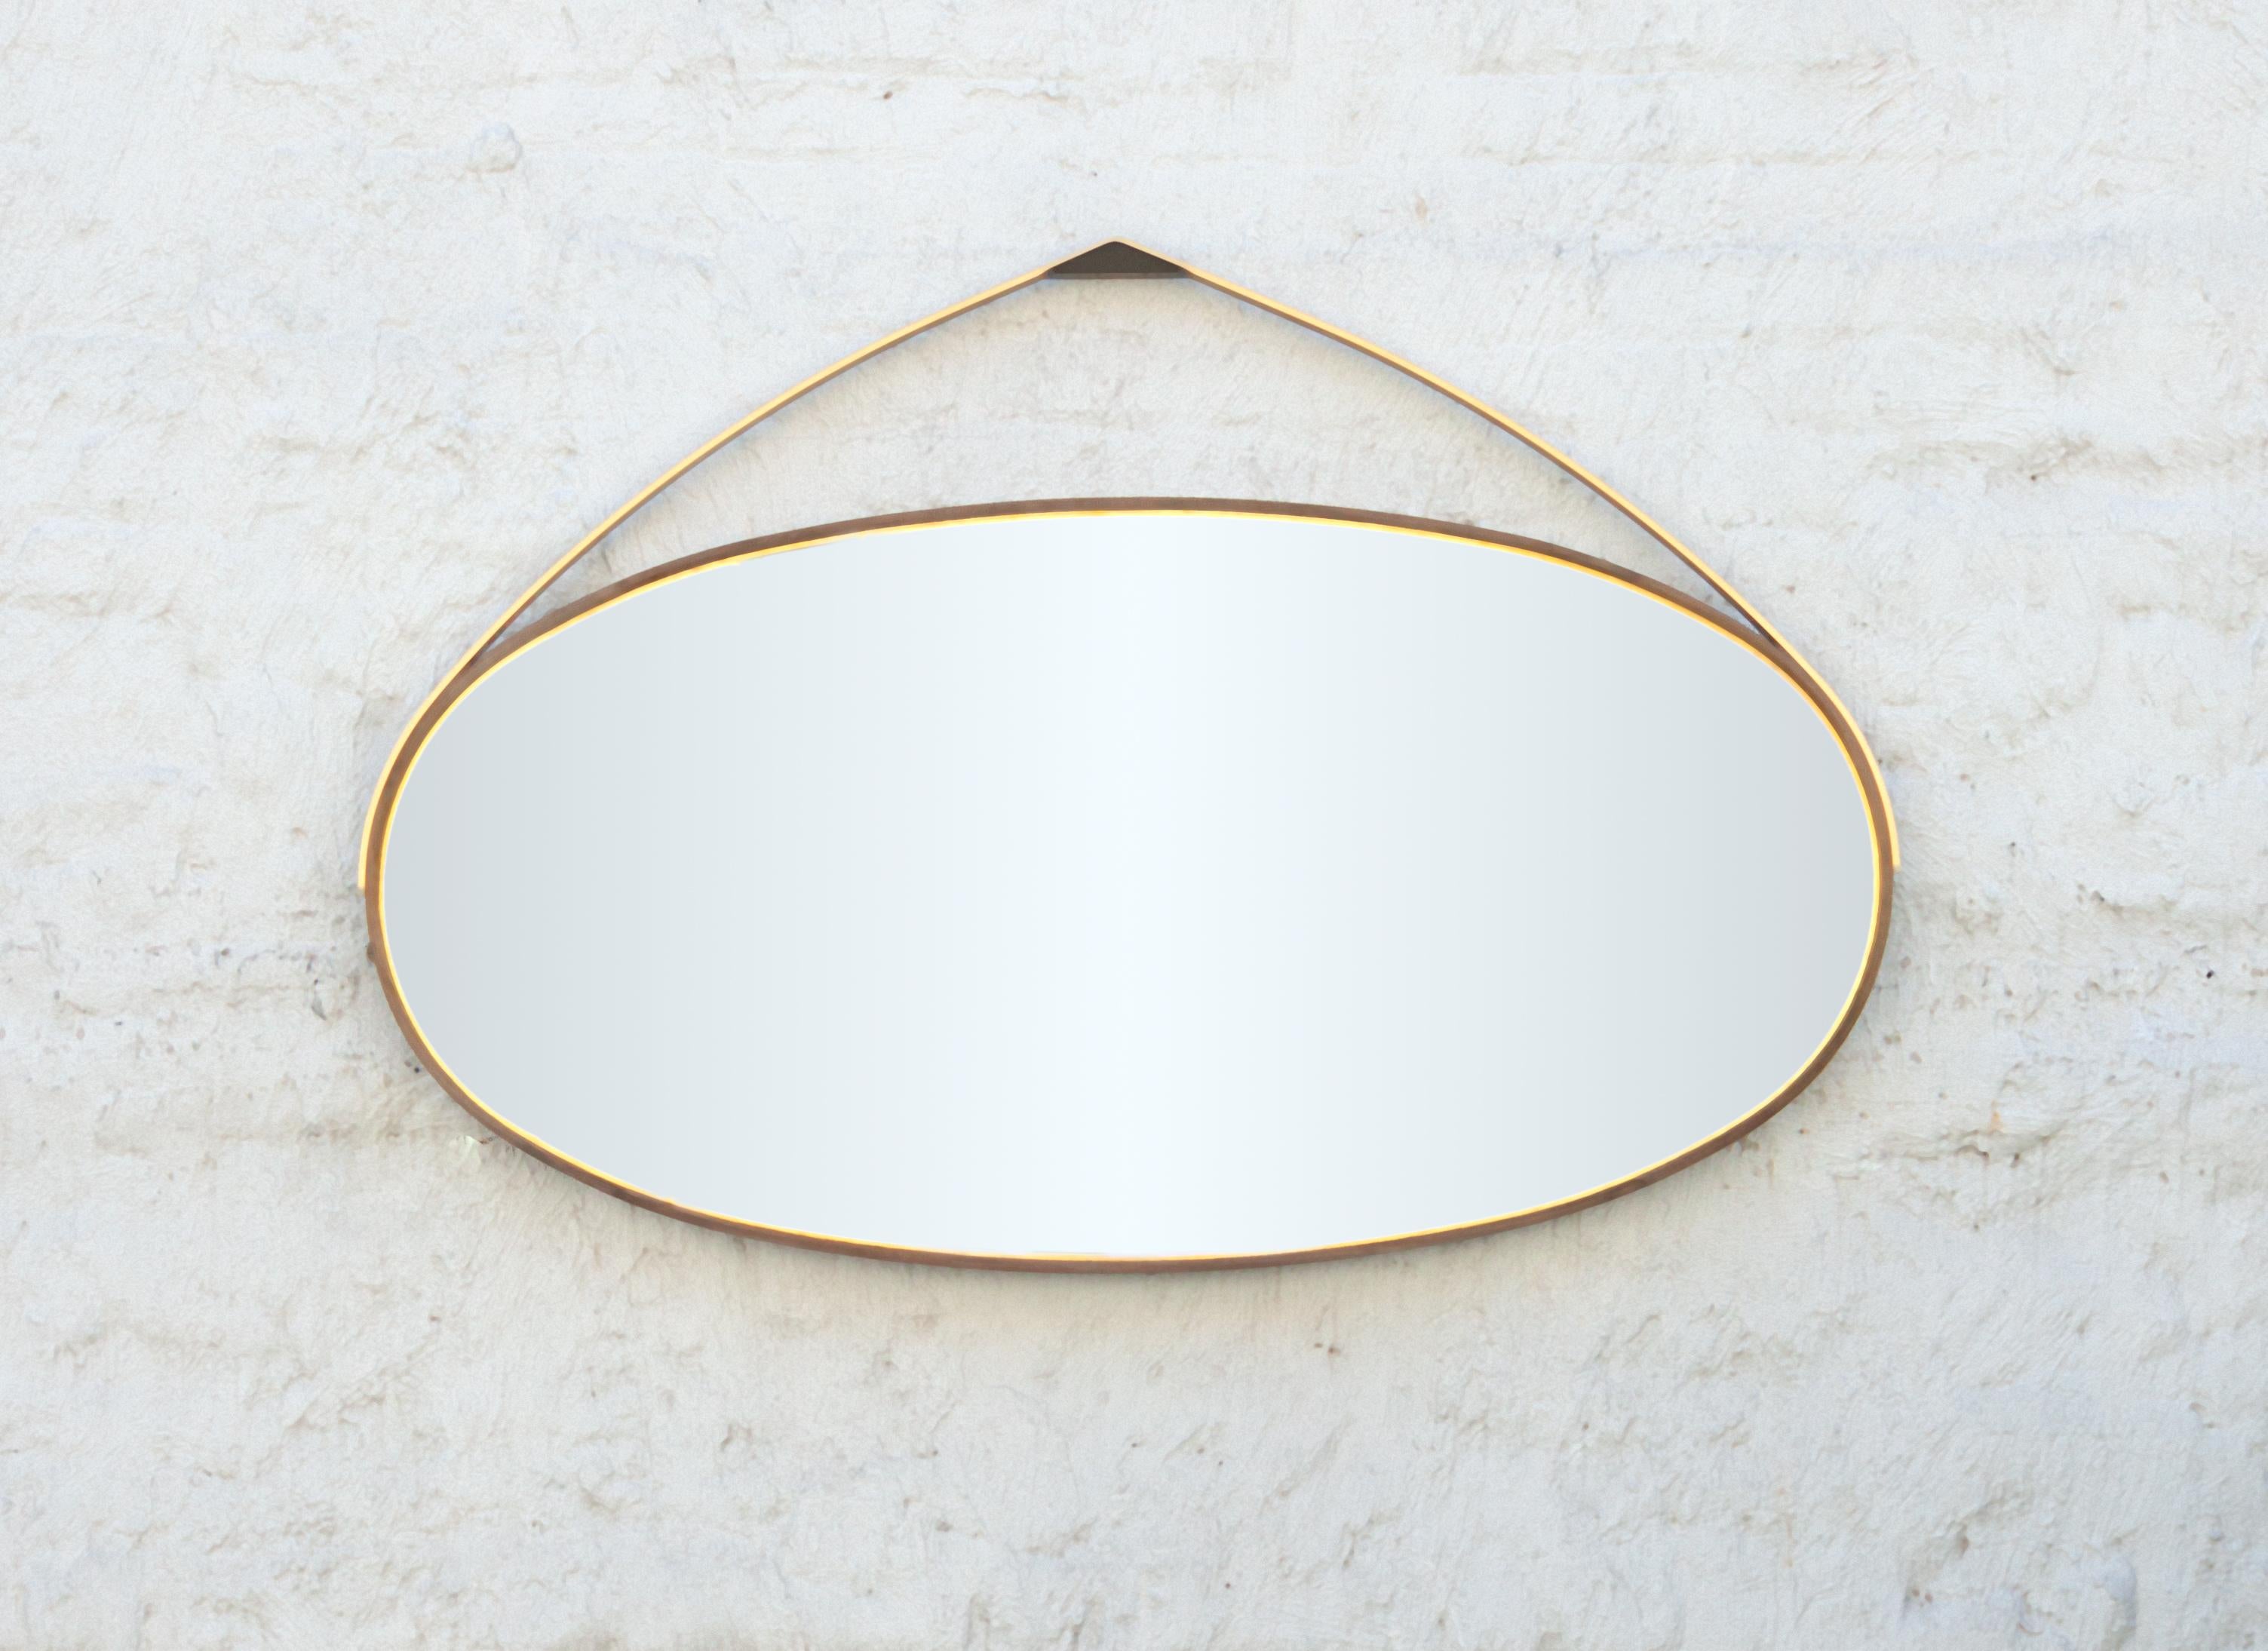 Faisant partie de la collection Gotham, ce miroir ovale fabriqué à la main présente une incrustation de feuilles de bronze, un cadre en érable Ambrosia oxydé plié à la vapeur et une structure de suspension en bronze tournée à la main, créant des